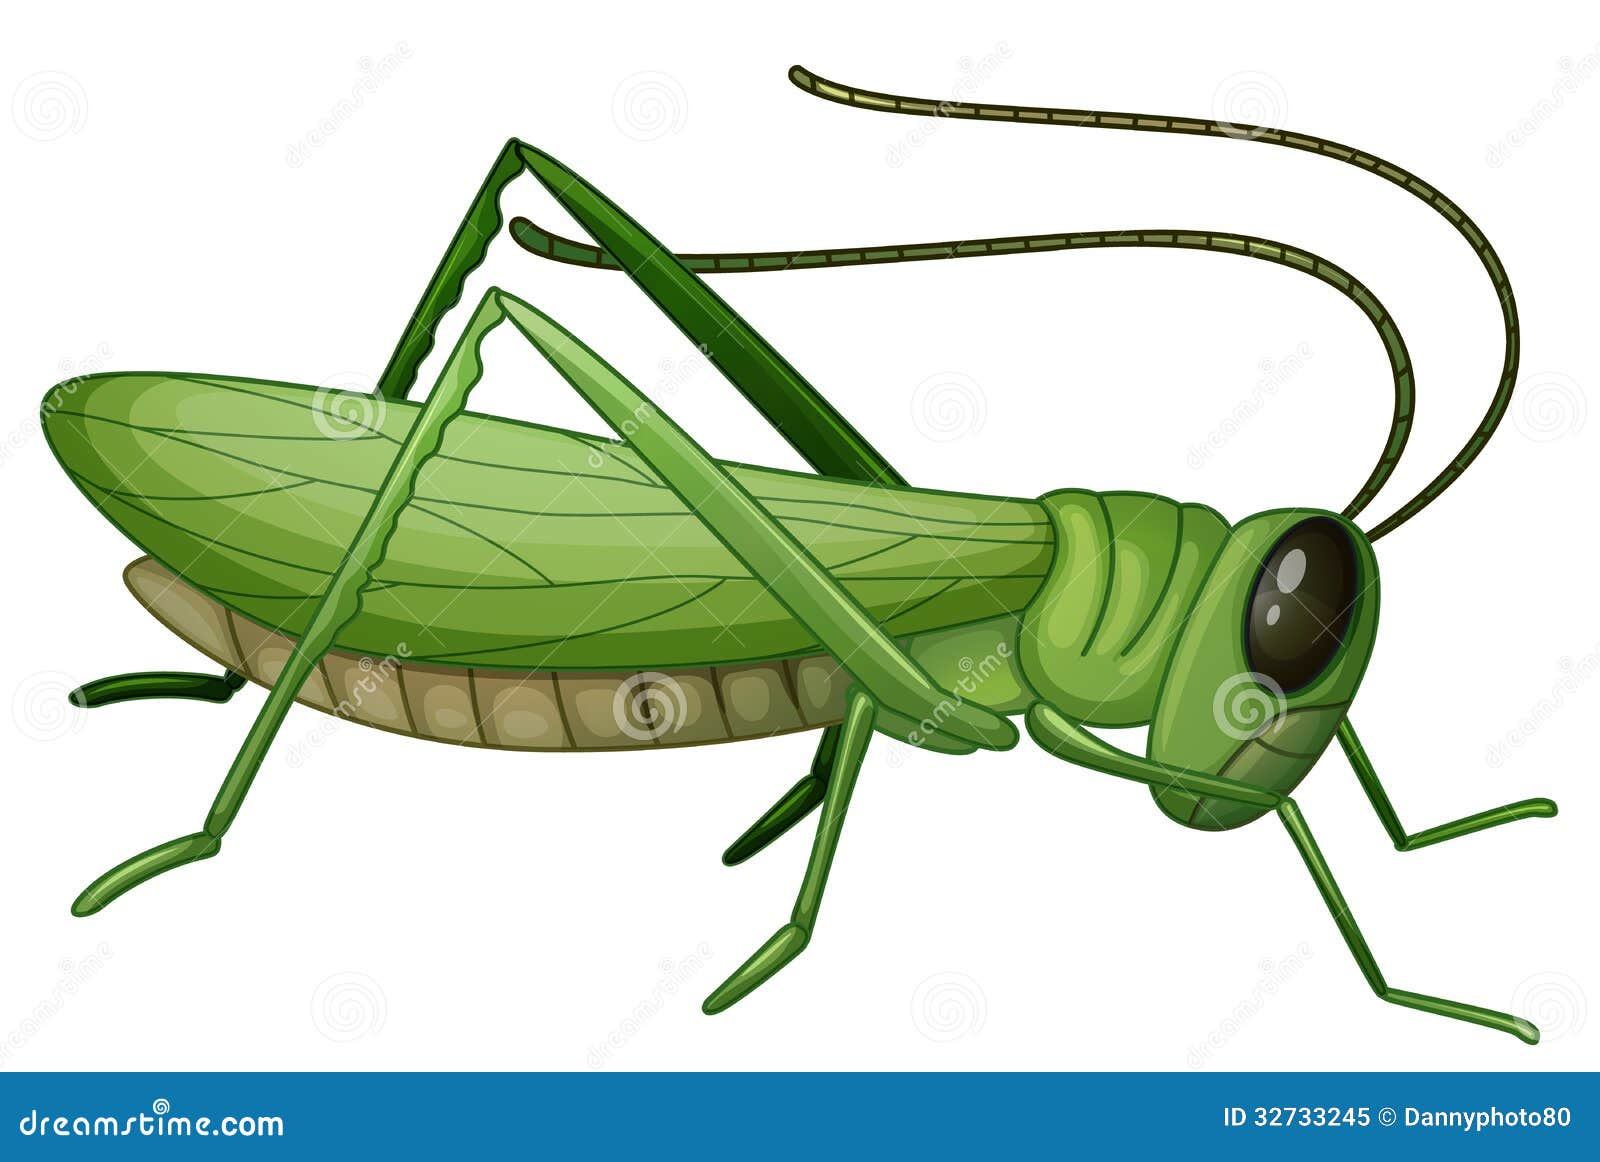 green grasshopper clipart - photo #19